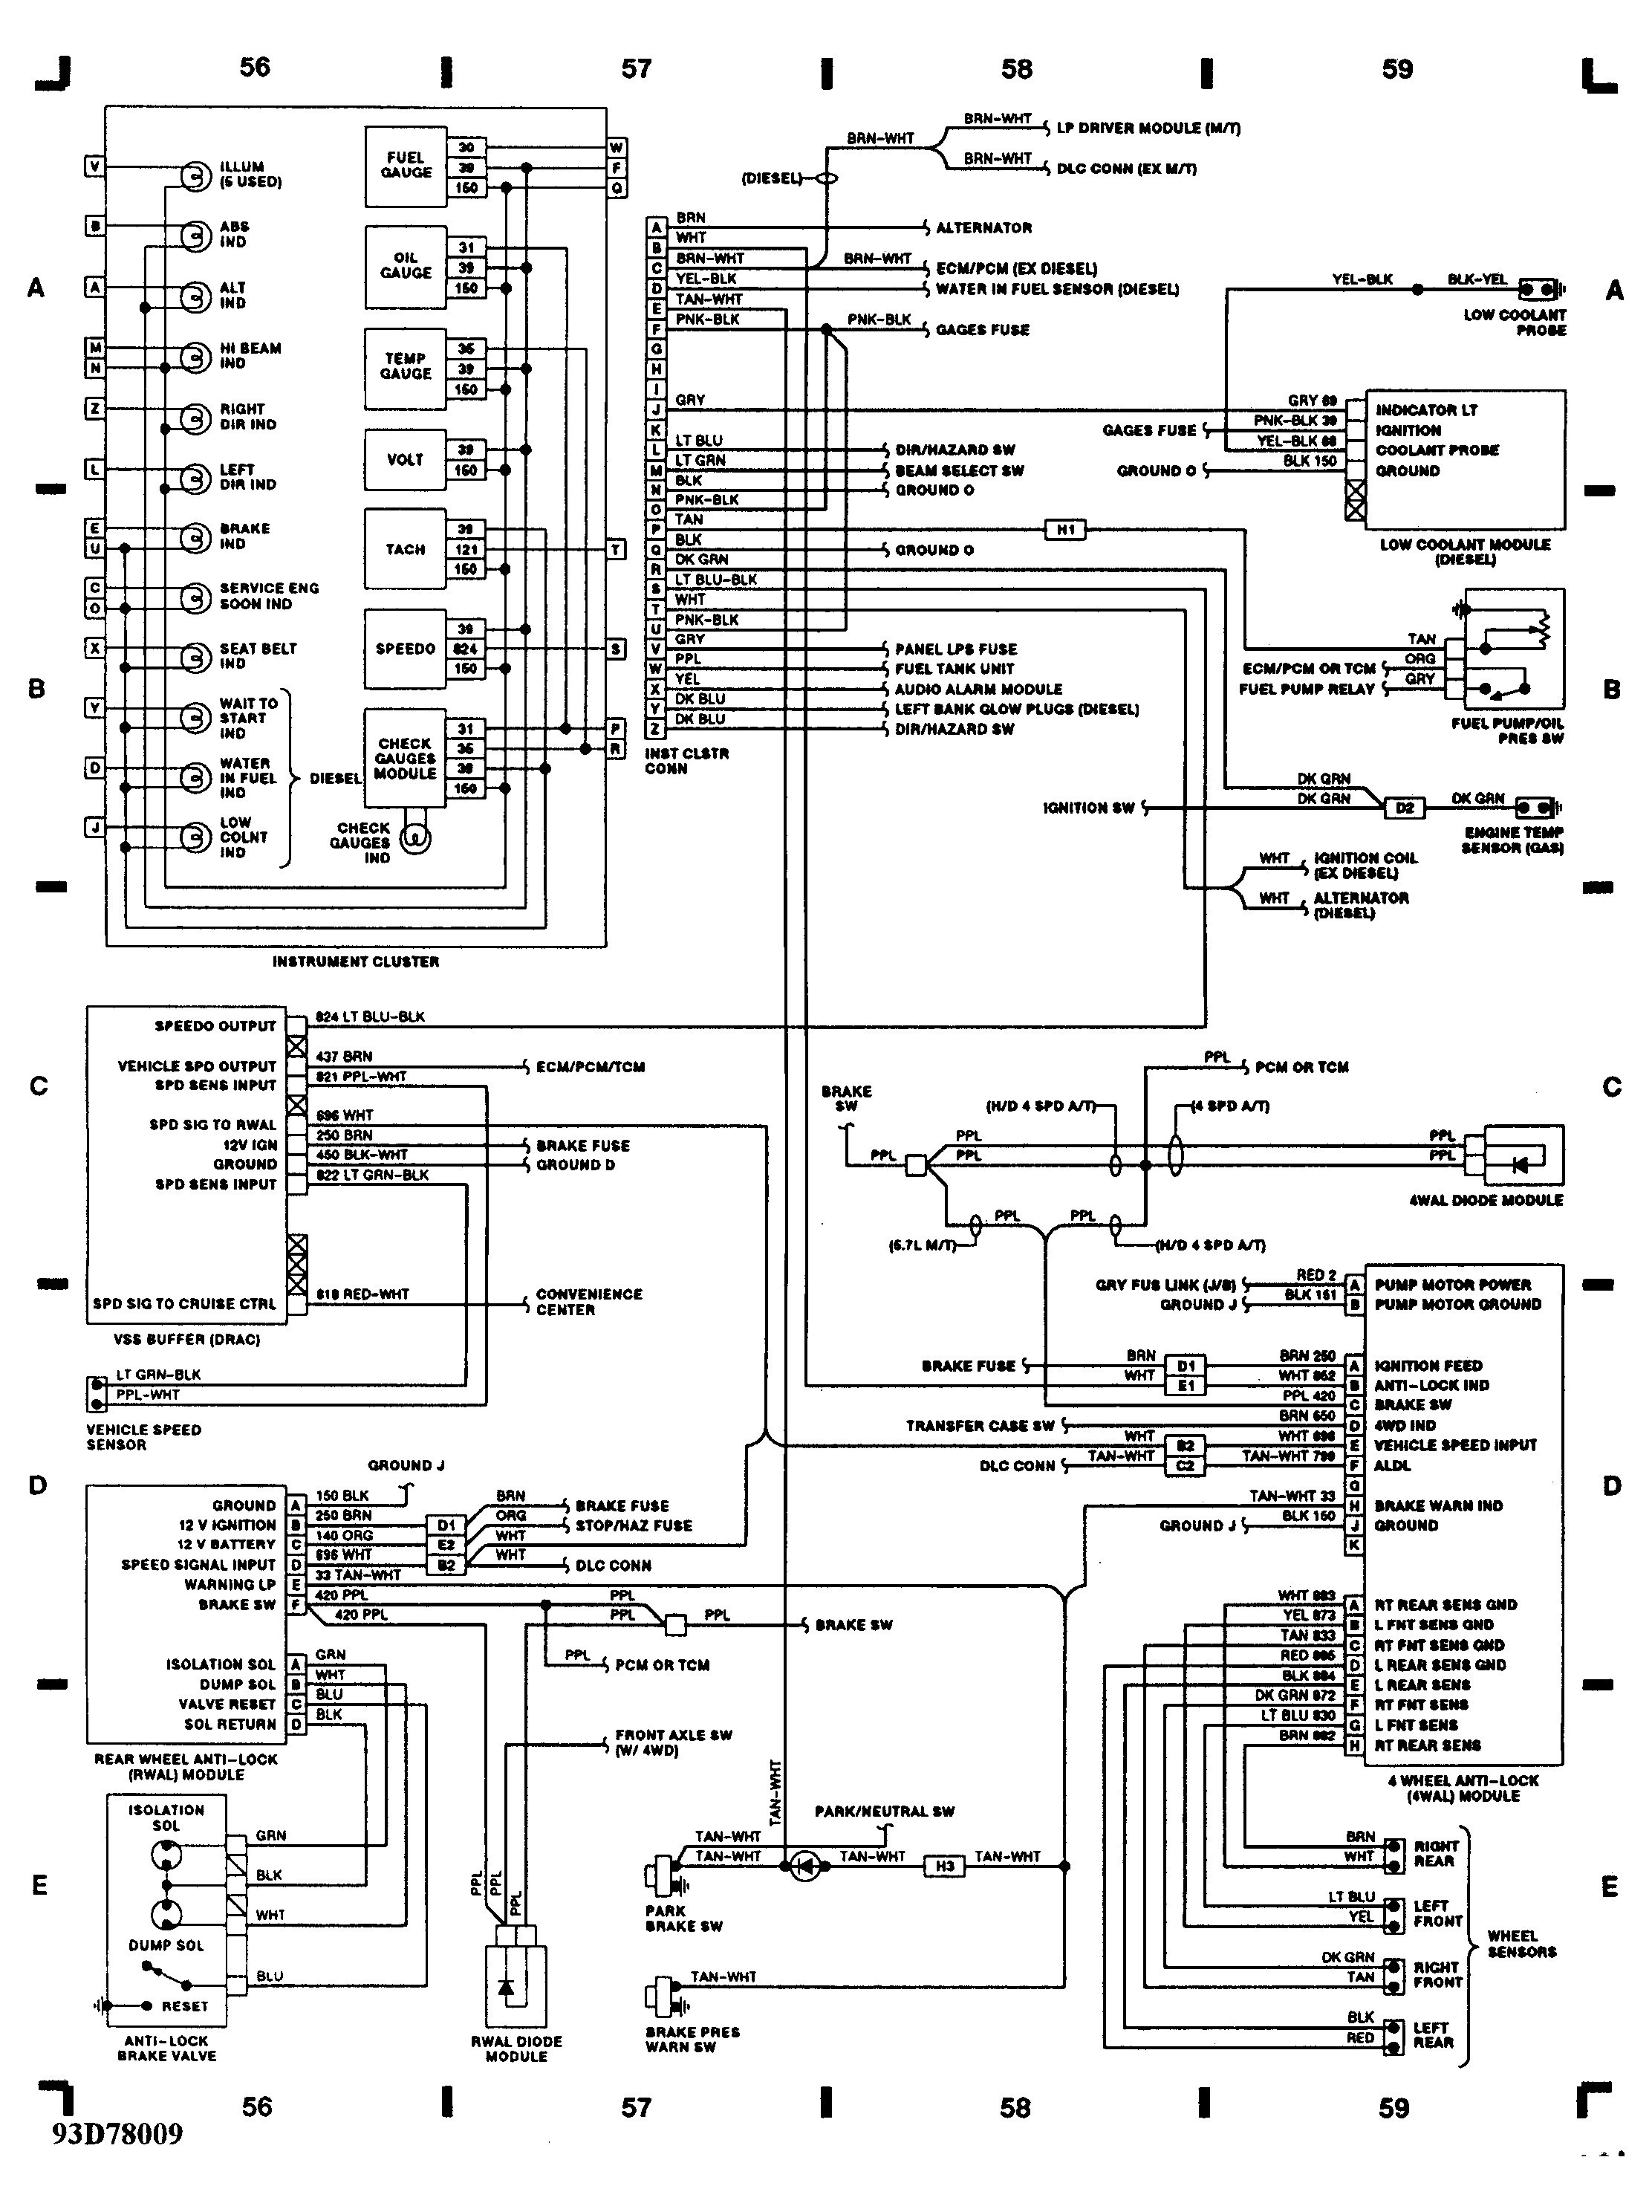 1993 chevy silverado wiring diagram